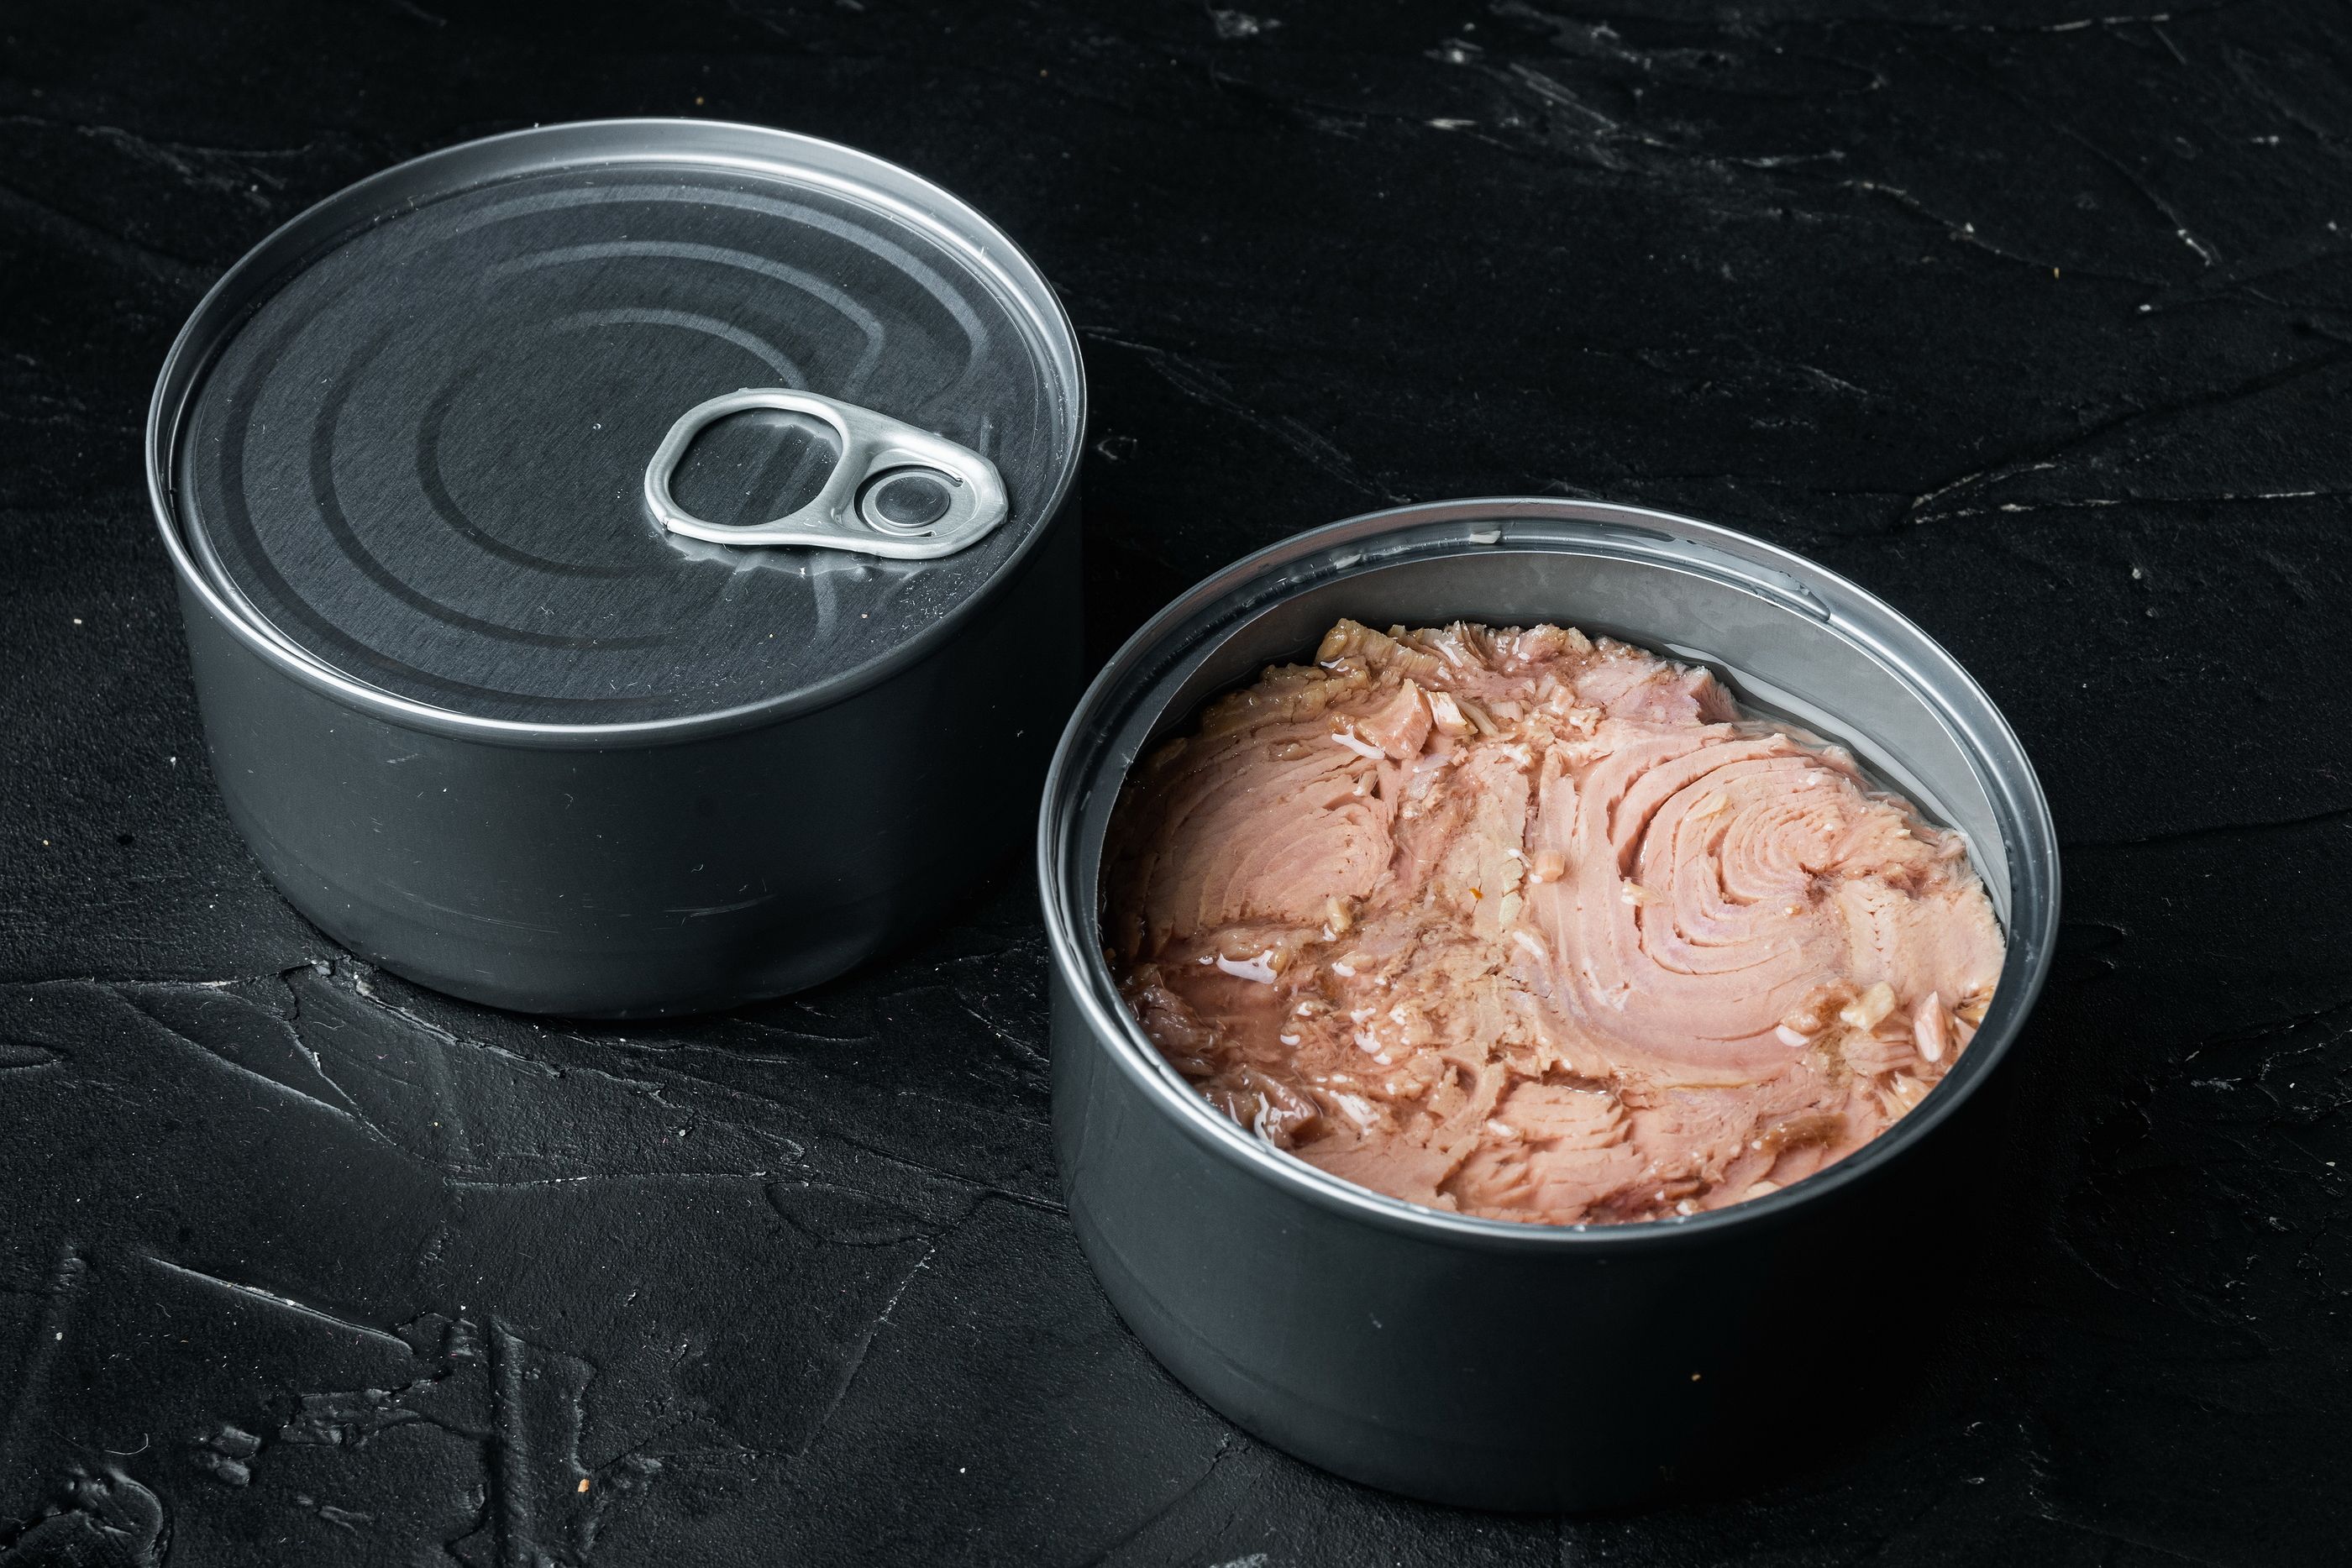 Alerta alimentaria en unas latas de atún. bigstock Canned Wild Yellowfin Tuna Set 450975963